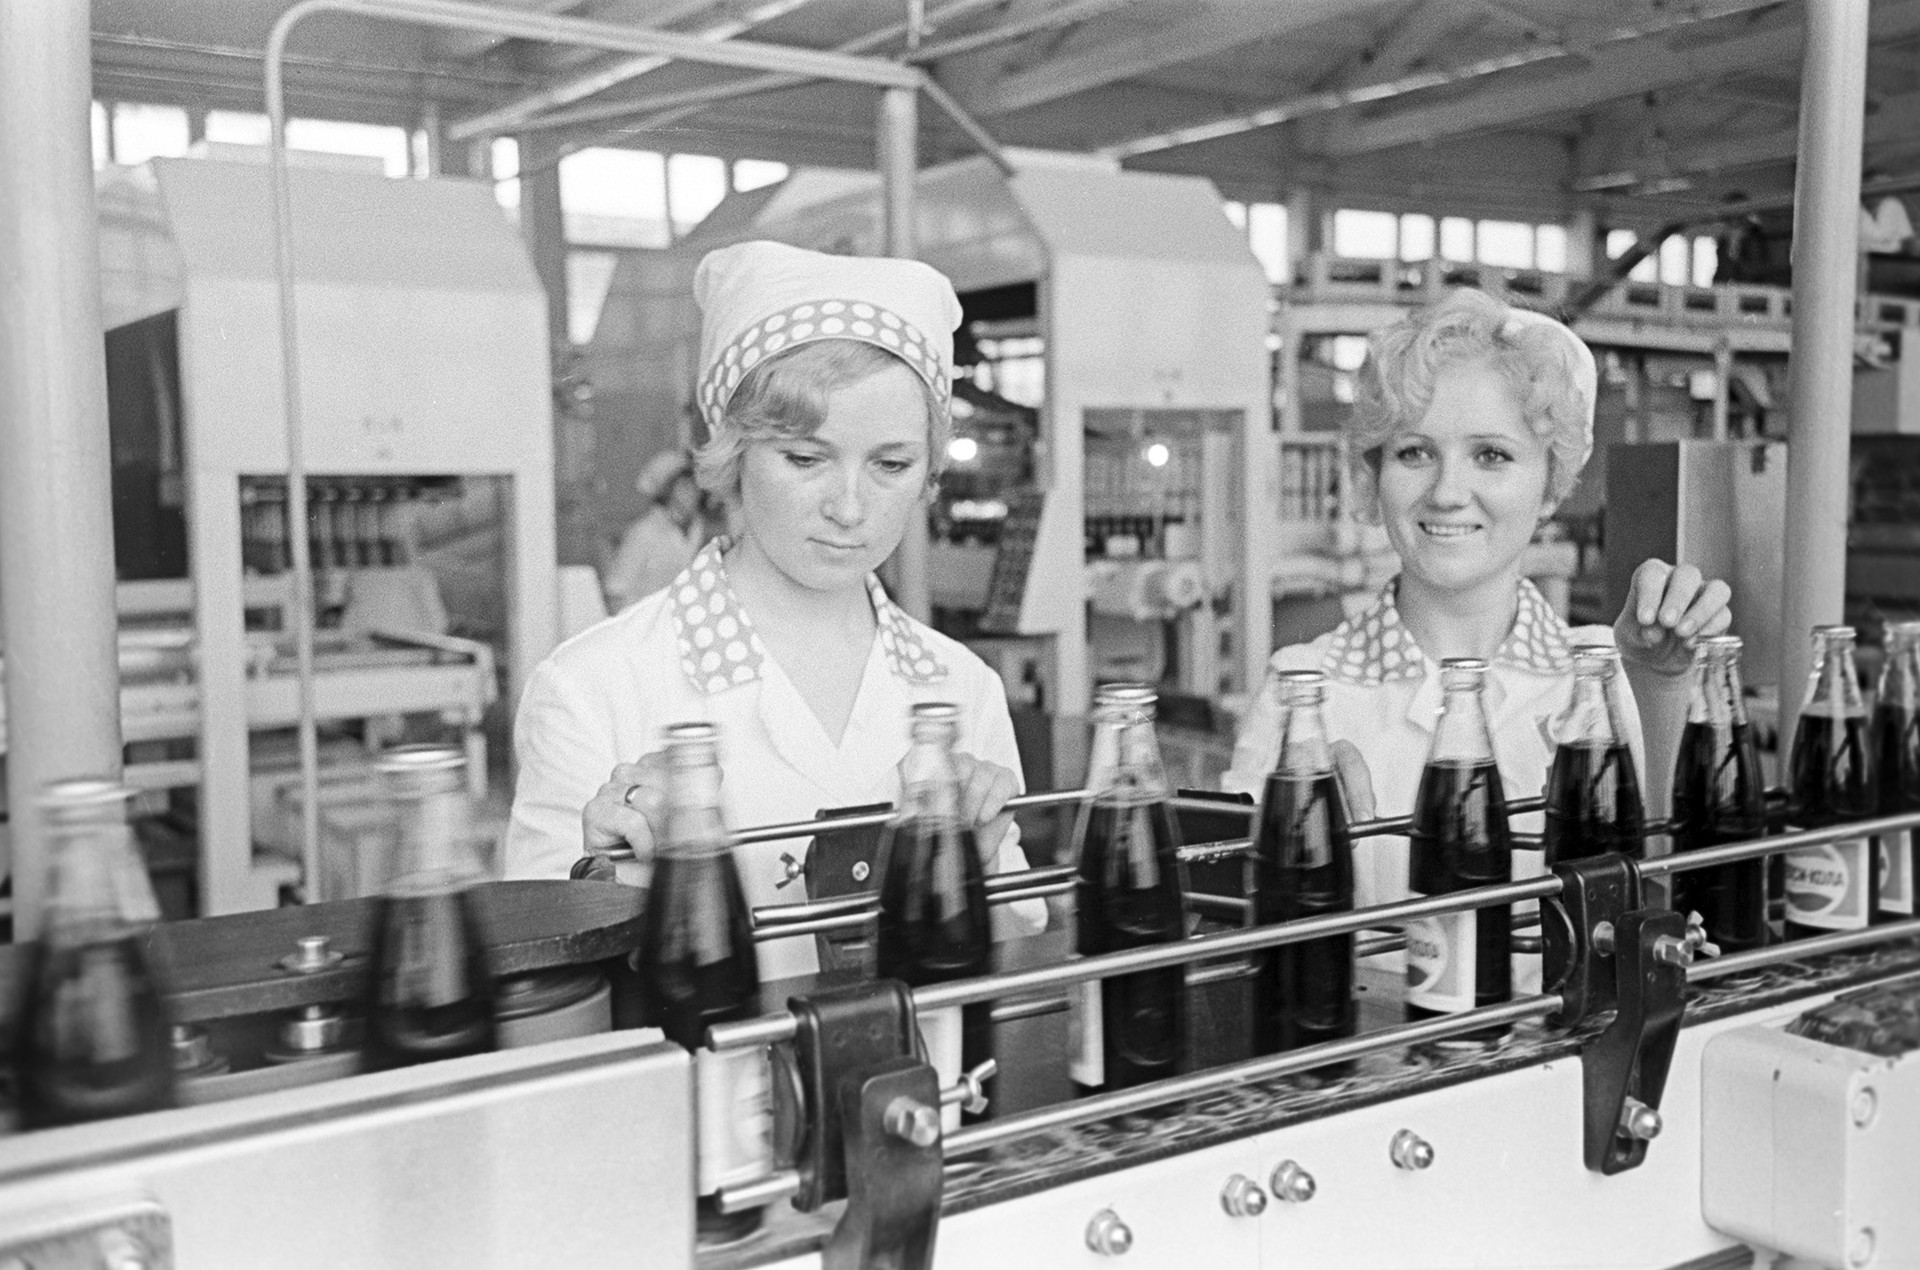 Tvornica piva u Novorosijsku. Proizvodna linija Pepsi Cole, 1974.

